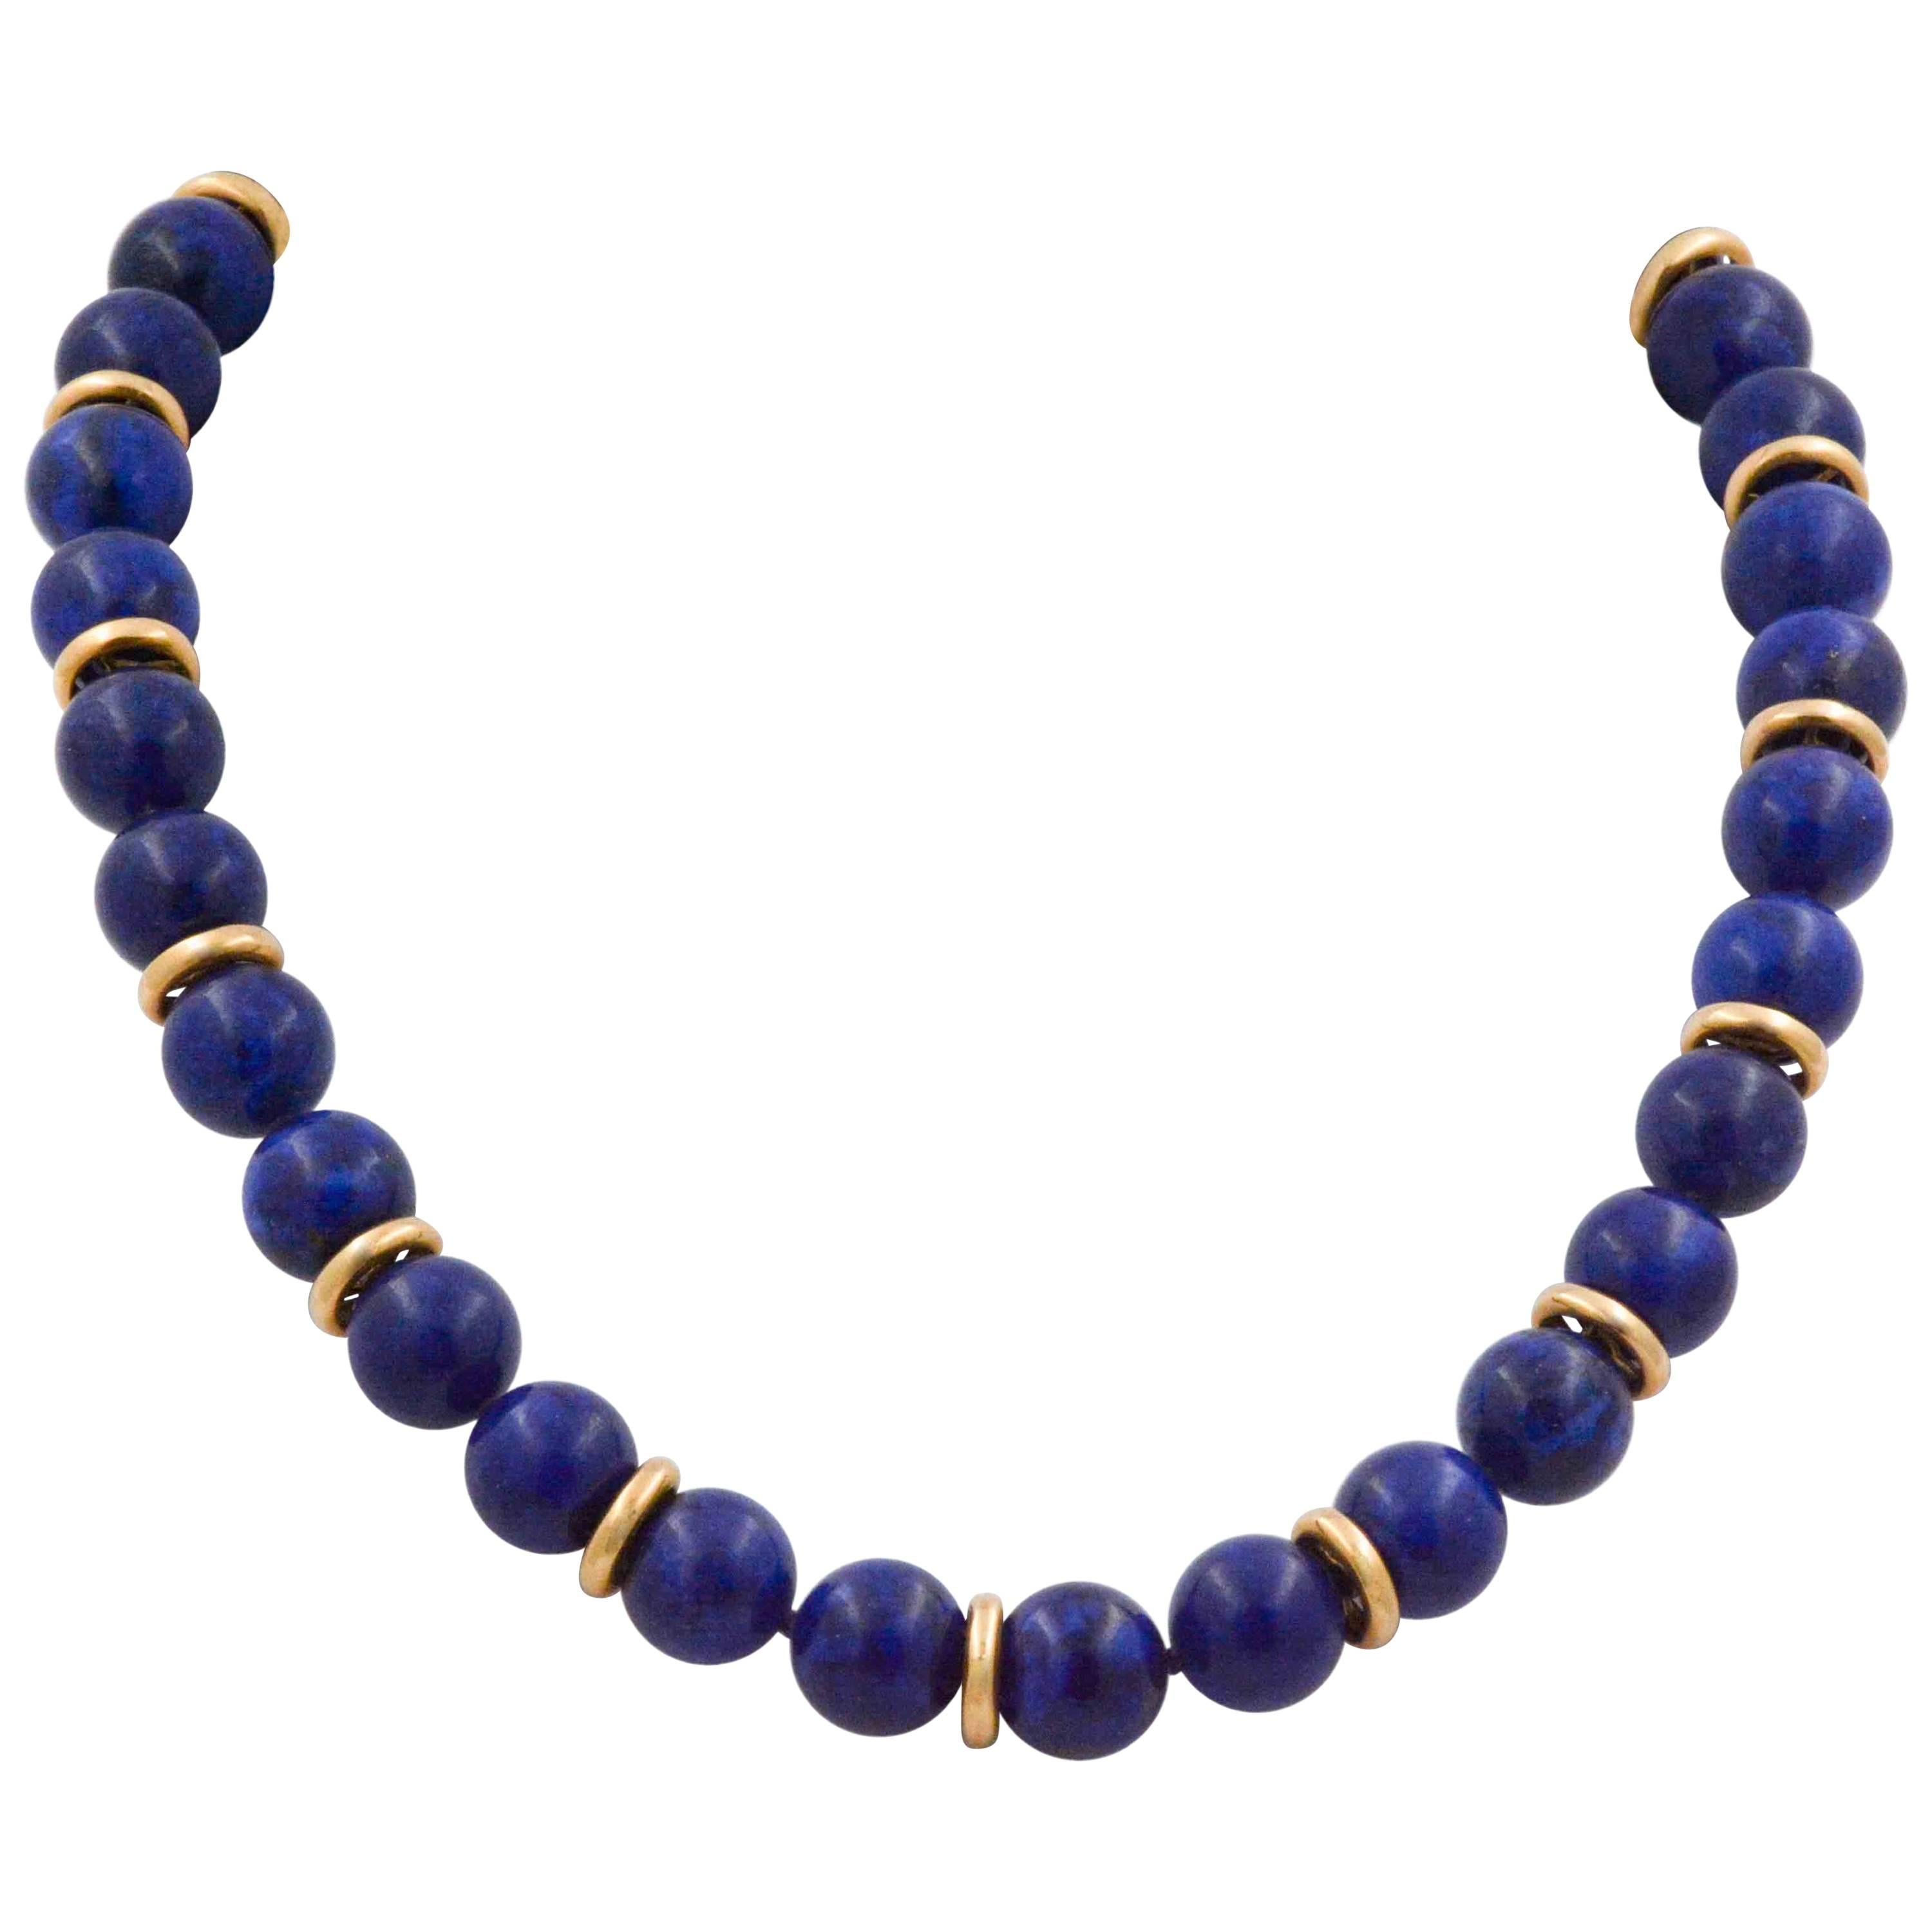 Lapis Lazuli Bead Necklace with 14 Karat Yellow Gold